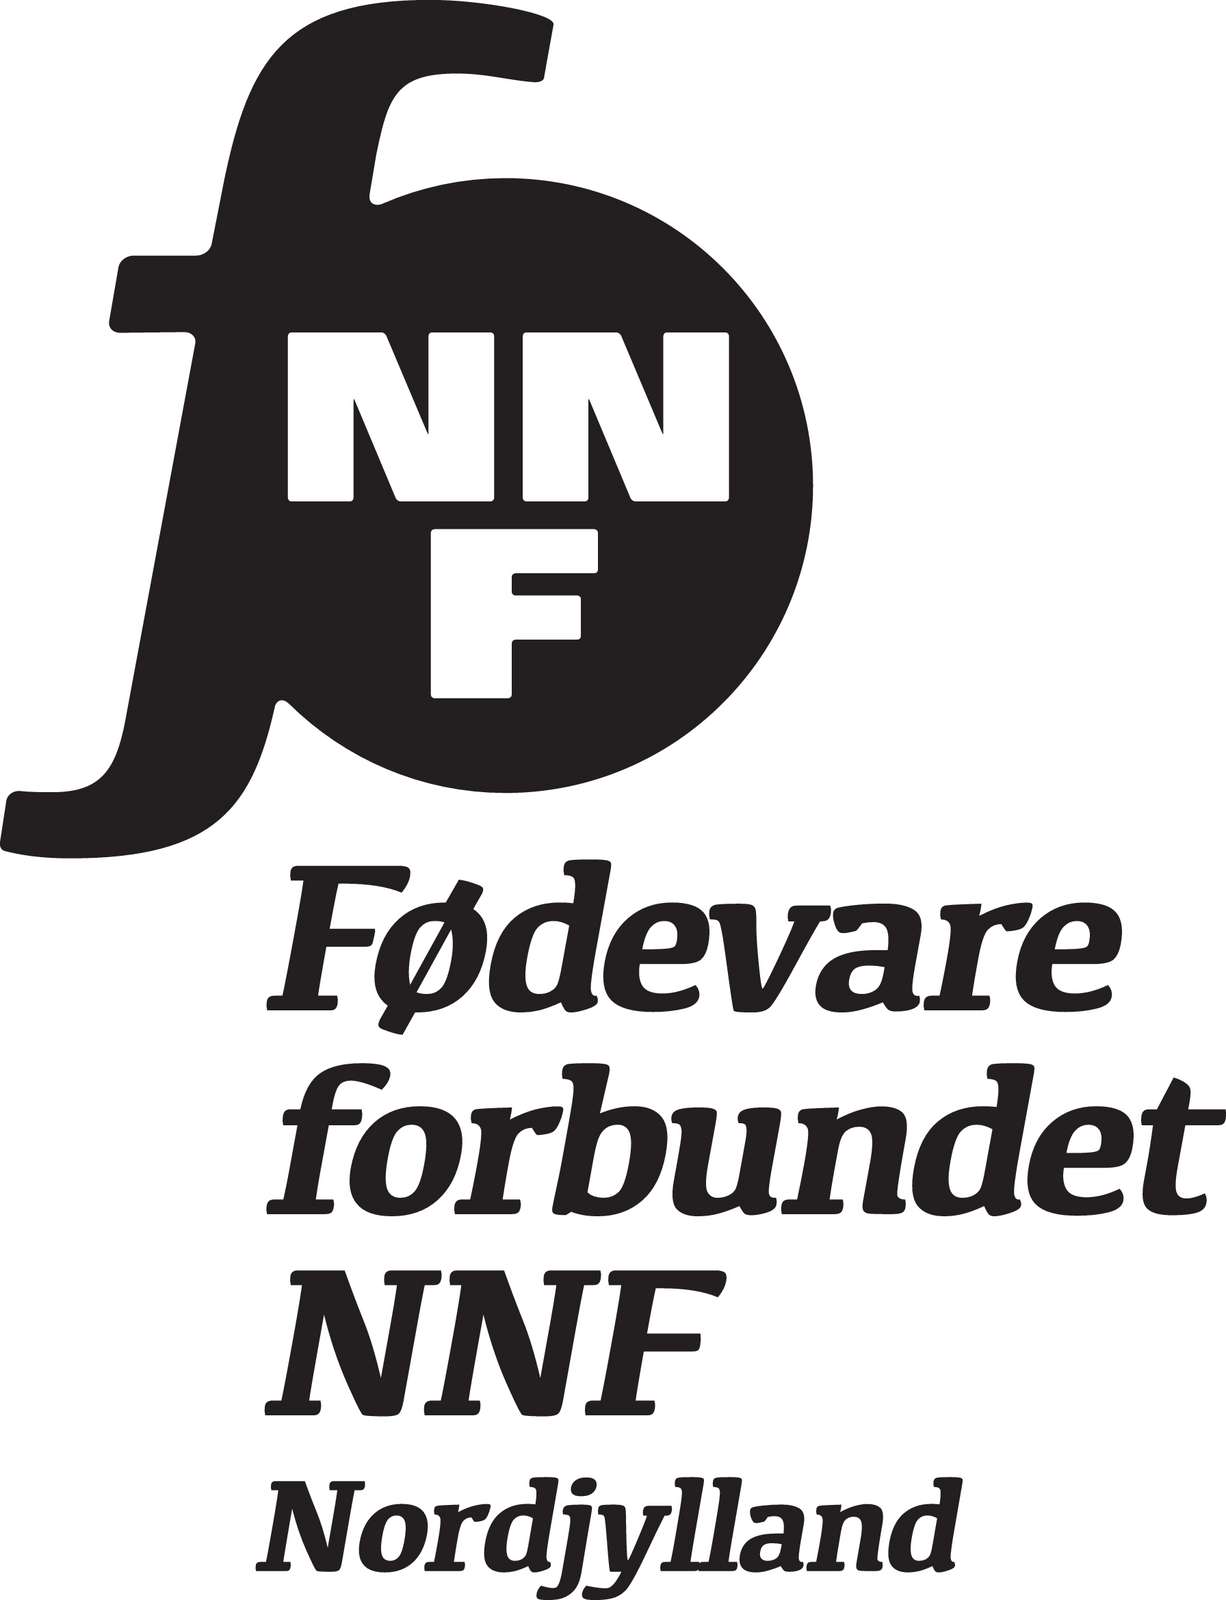 FNNF_Nordjylland_hoj_sort